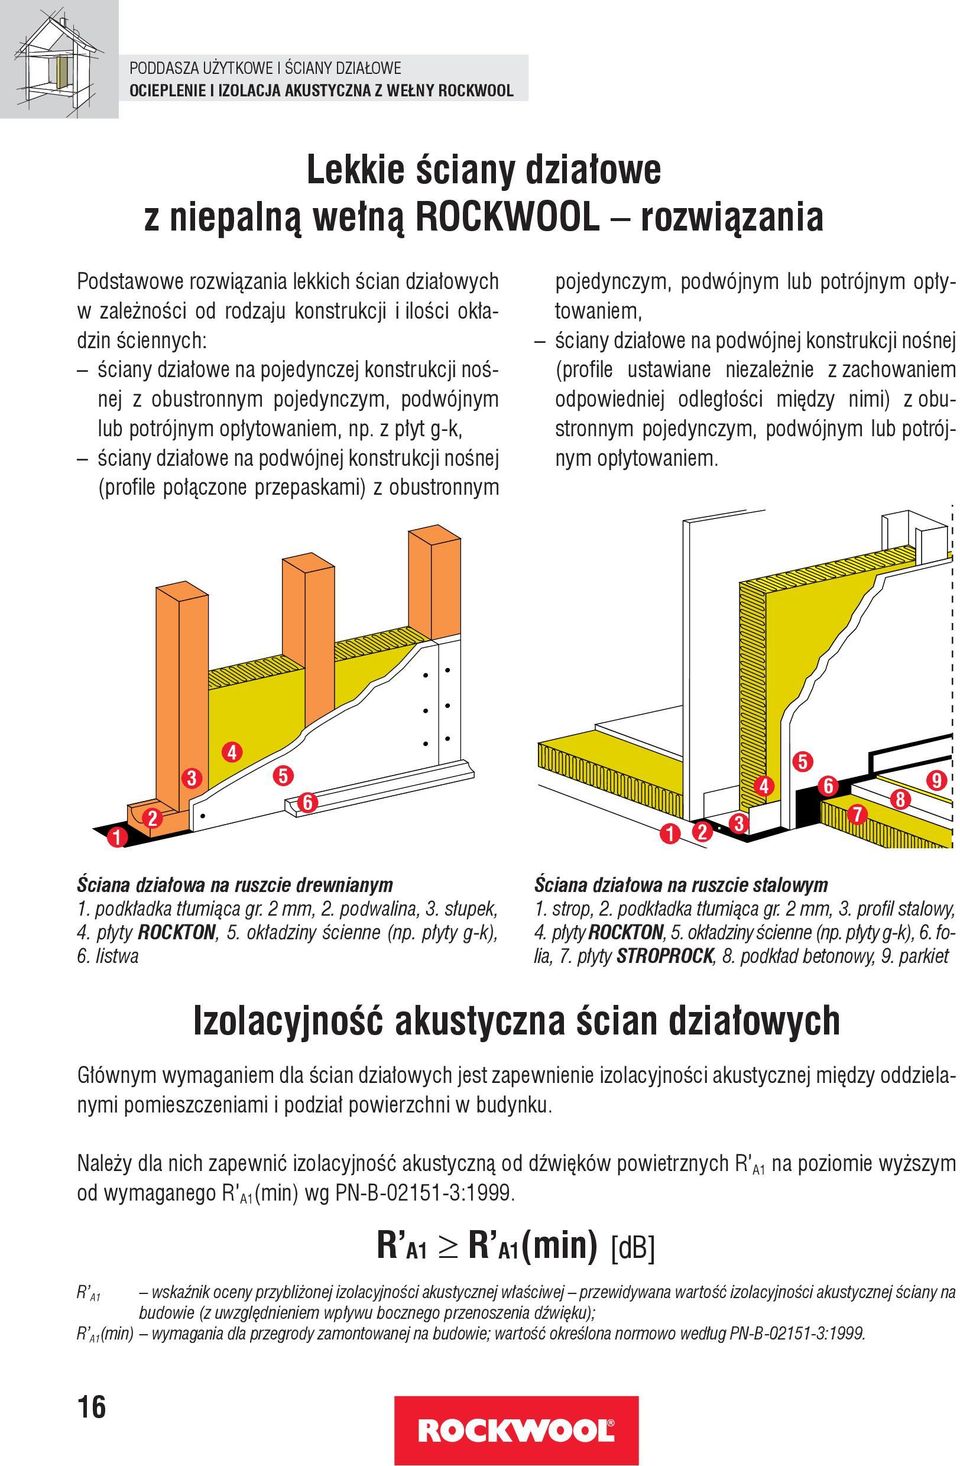 z płyt g-k, ściany działowe na podwójnej konstrukcji nośnej (profile połączone przepaskami) z obustronnym pojedynczym, podwójnym lub potrójnym opłytowaniem, ściany działowe na podwójnej konstrukcji